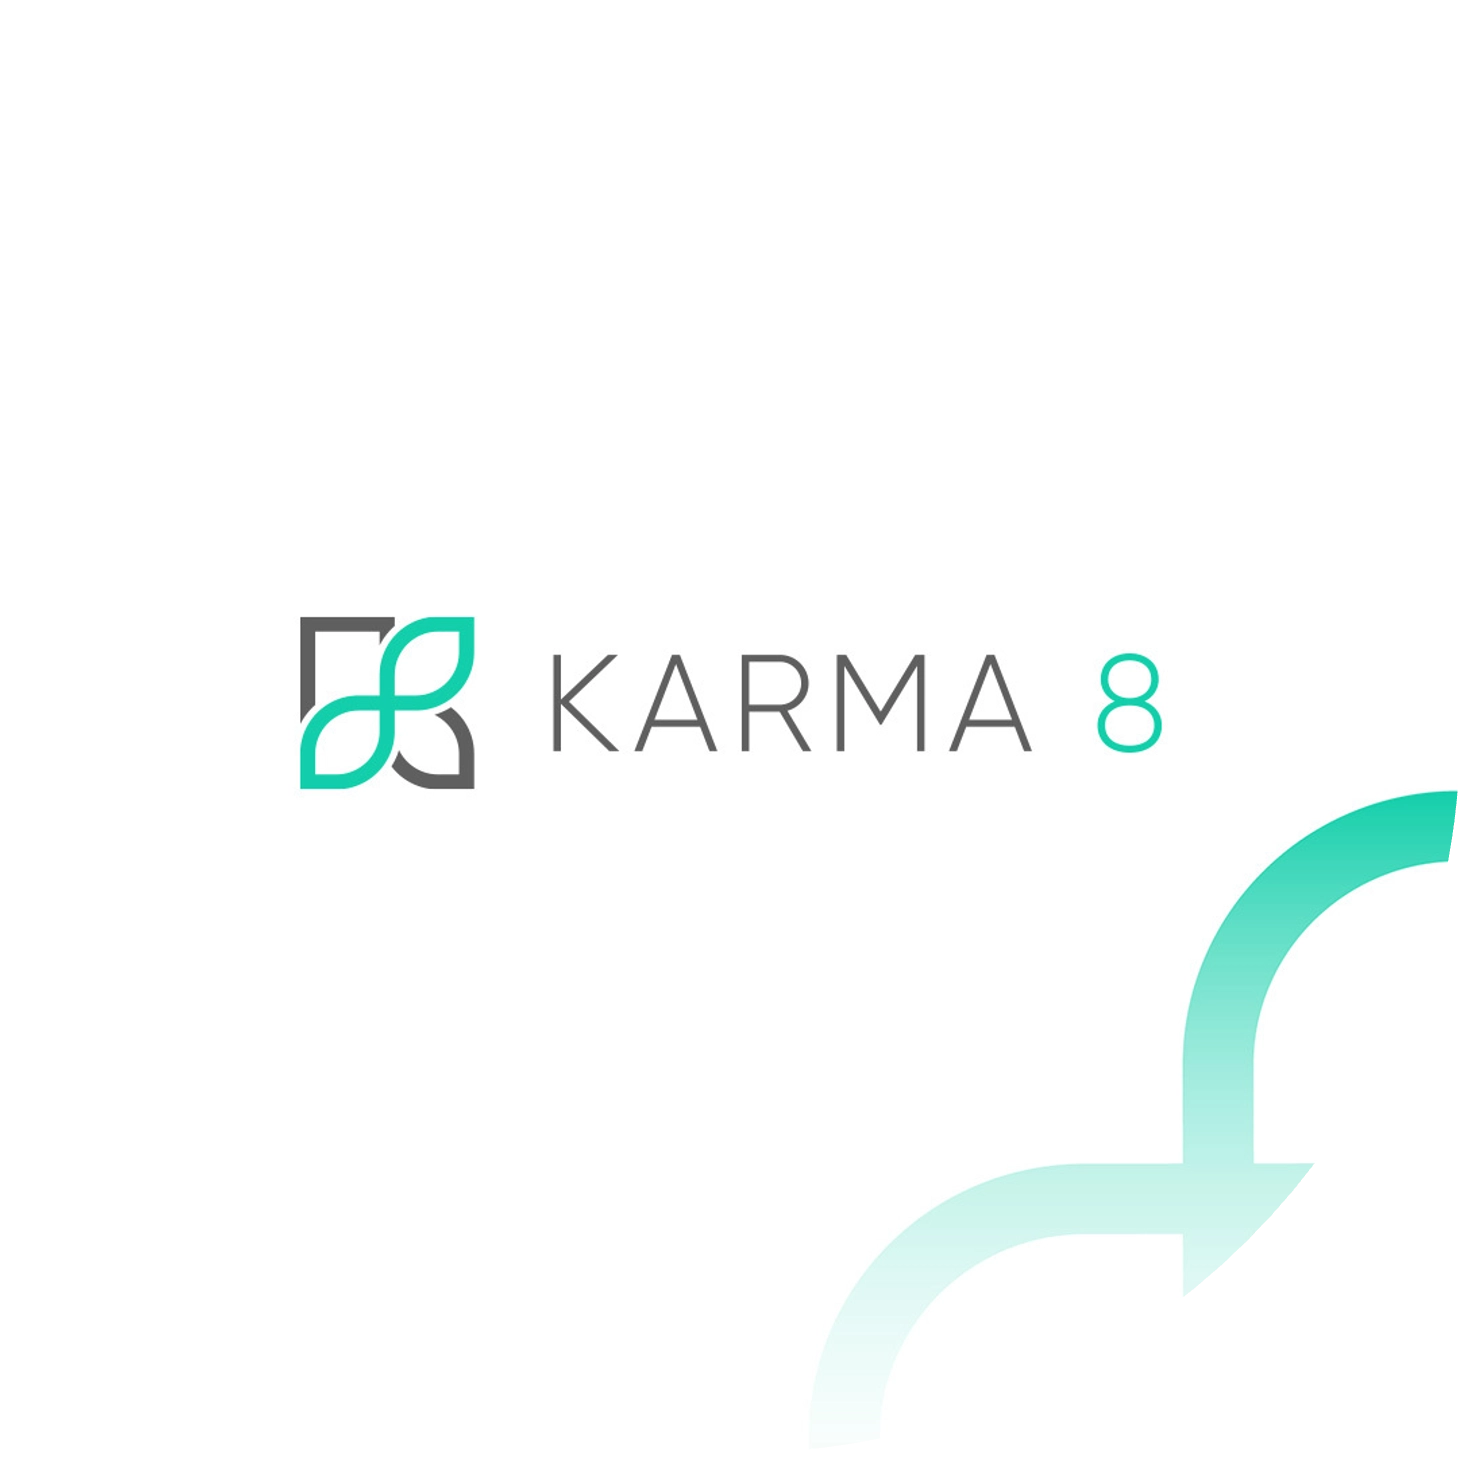 Karma 8 - Dubai